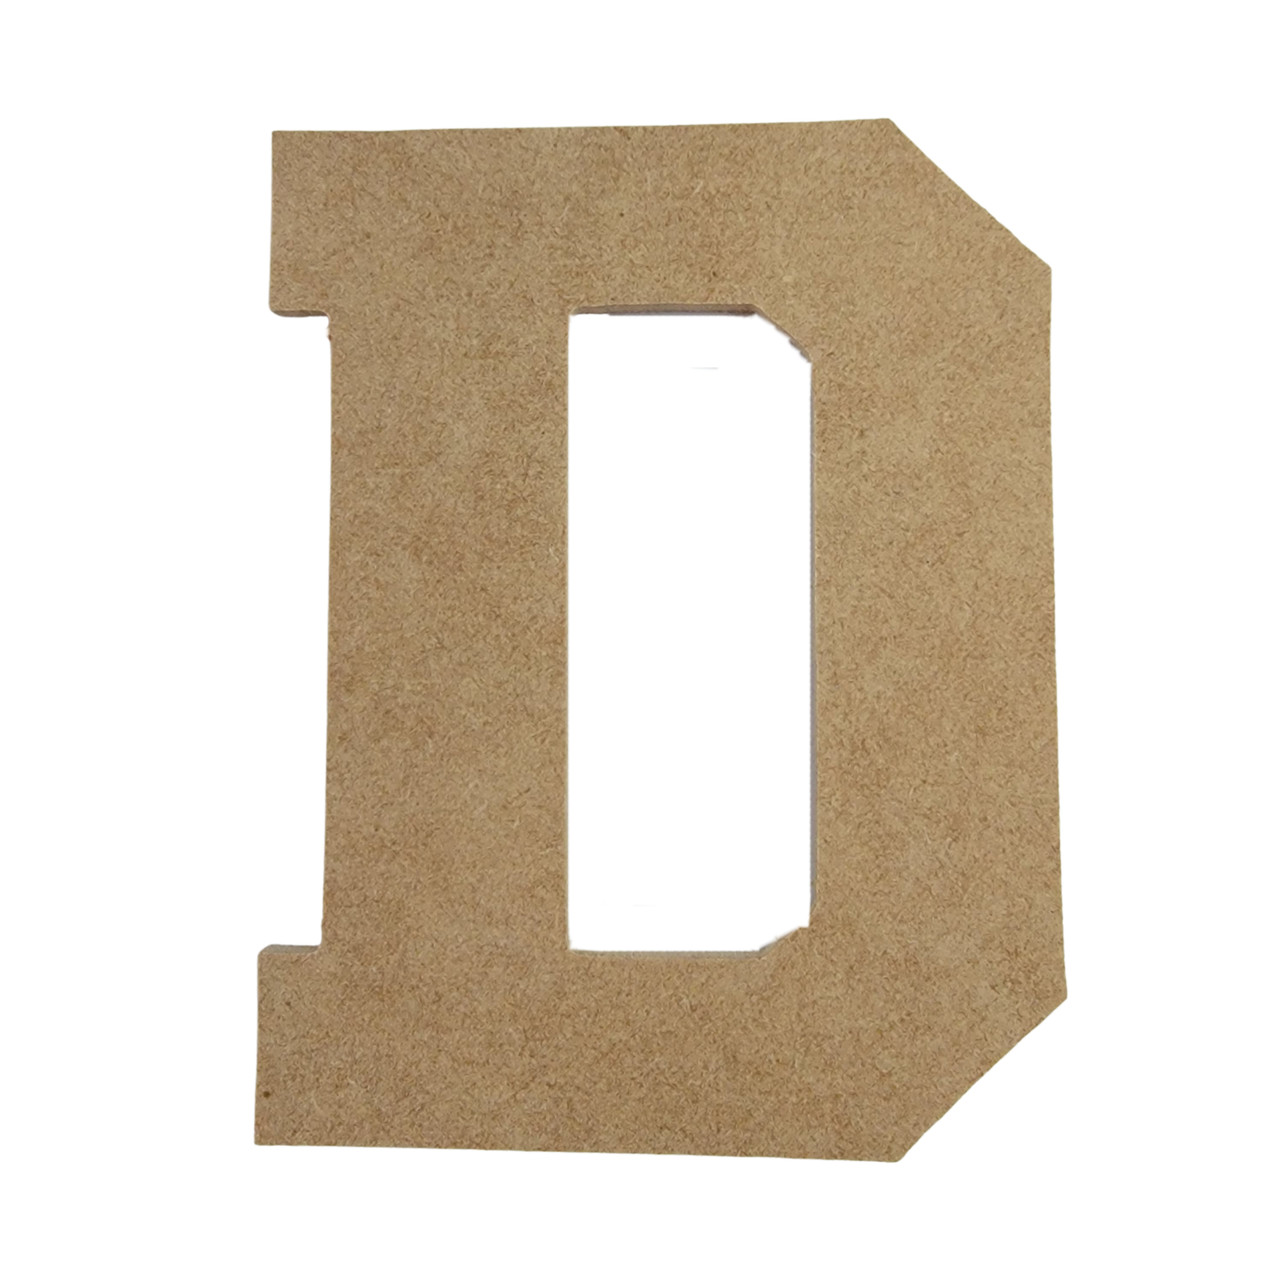 Freestanding Large Cardboard Letter : D